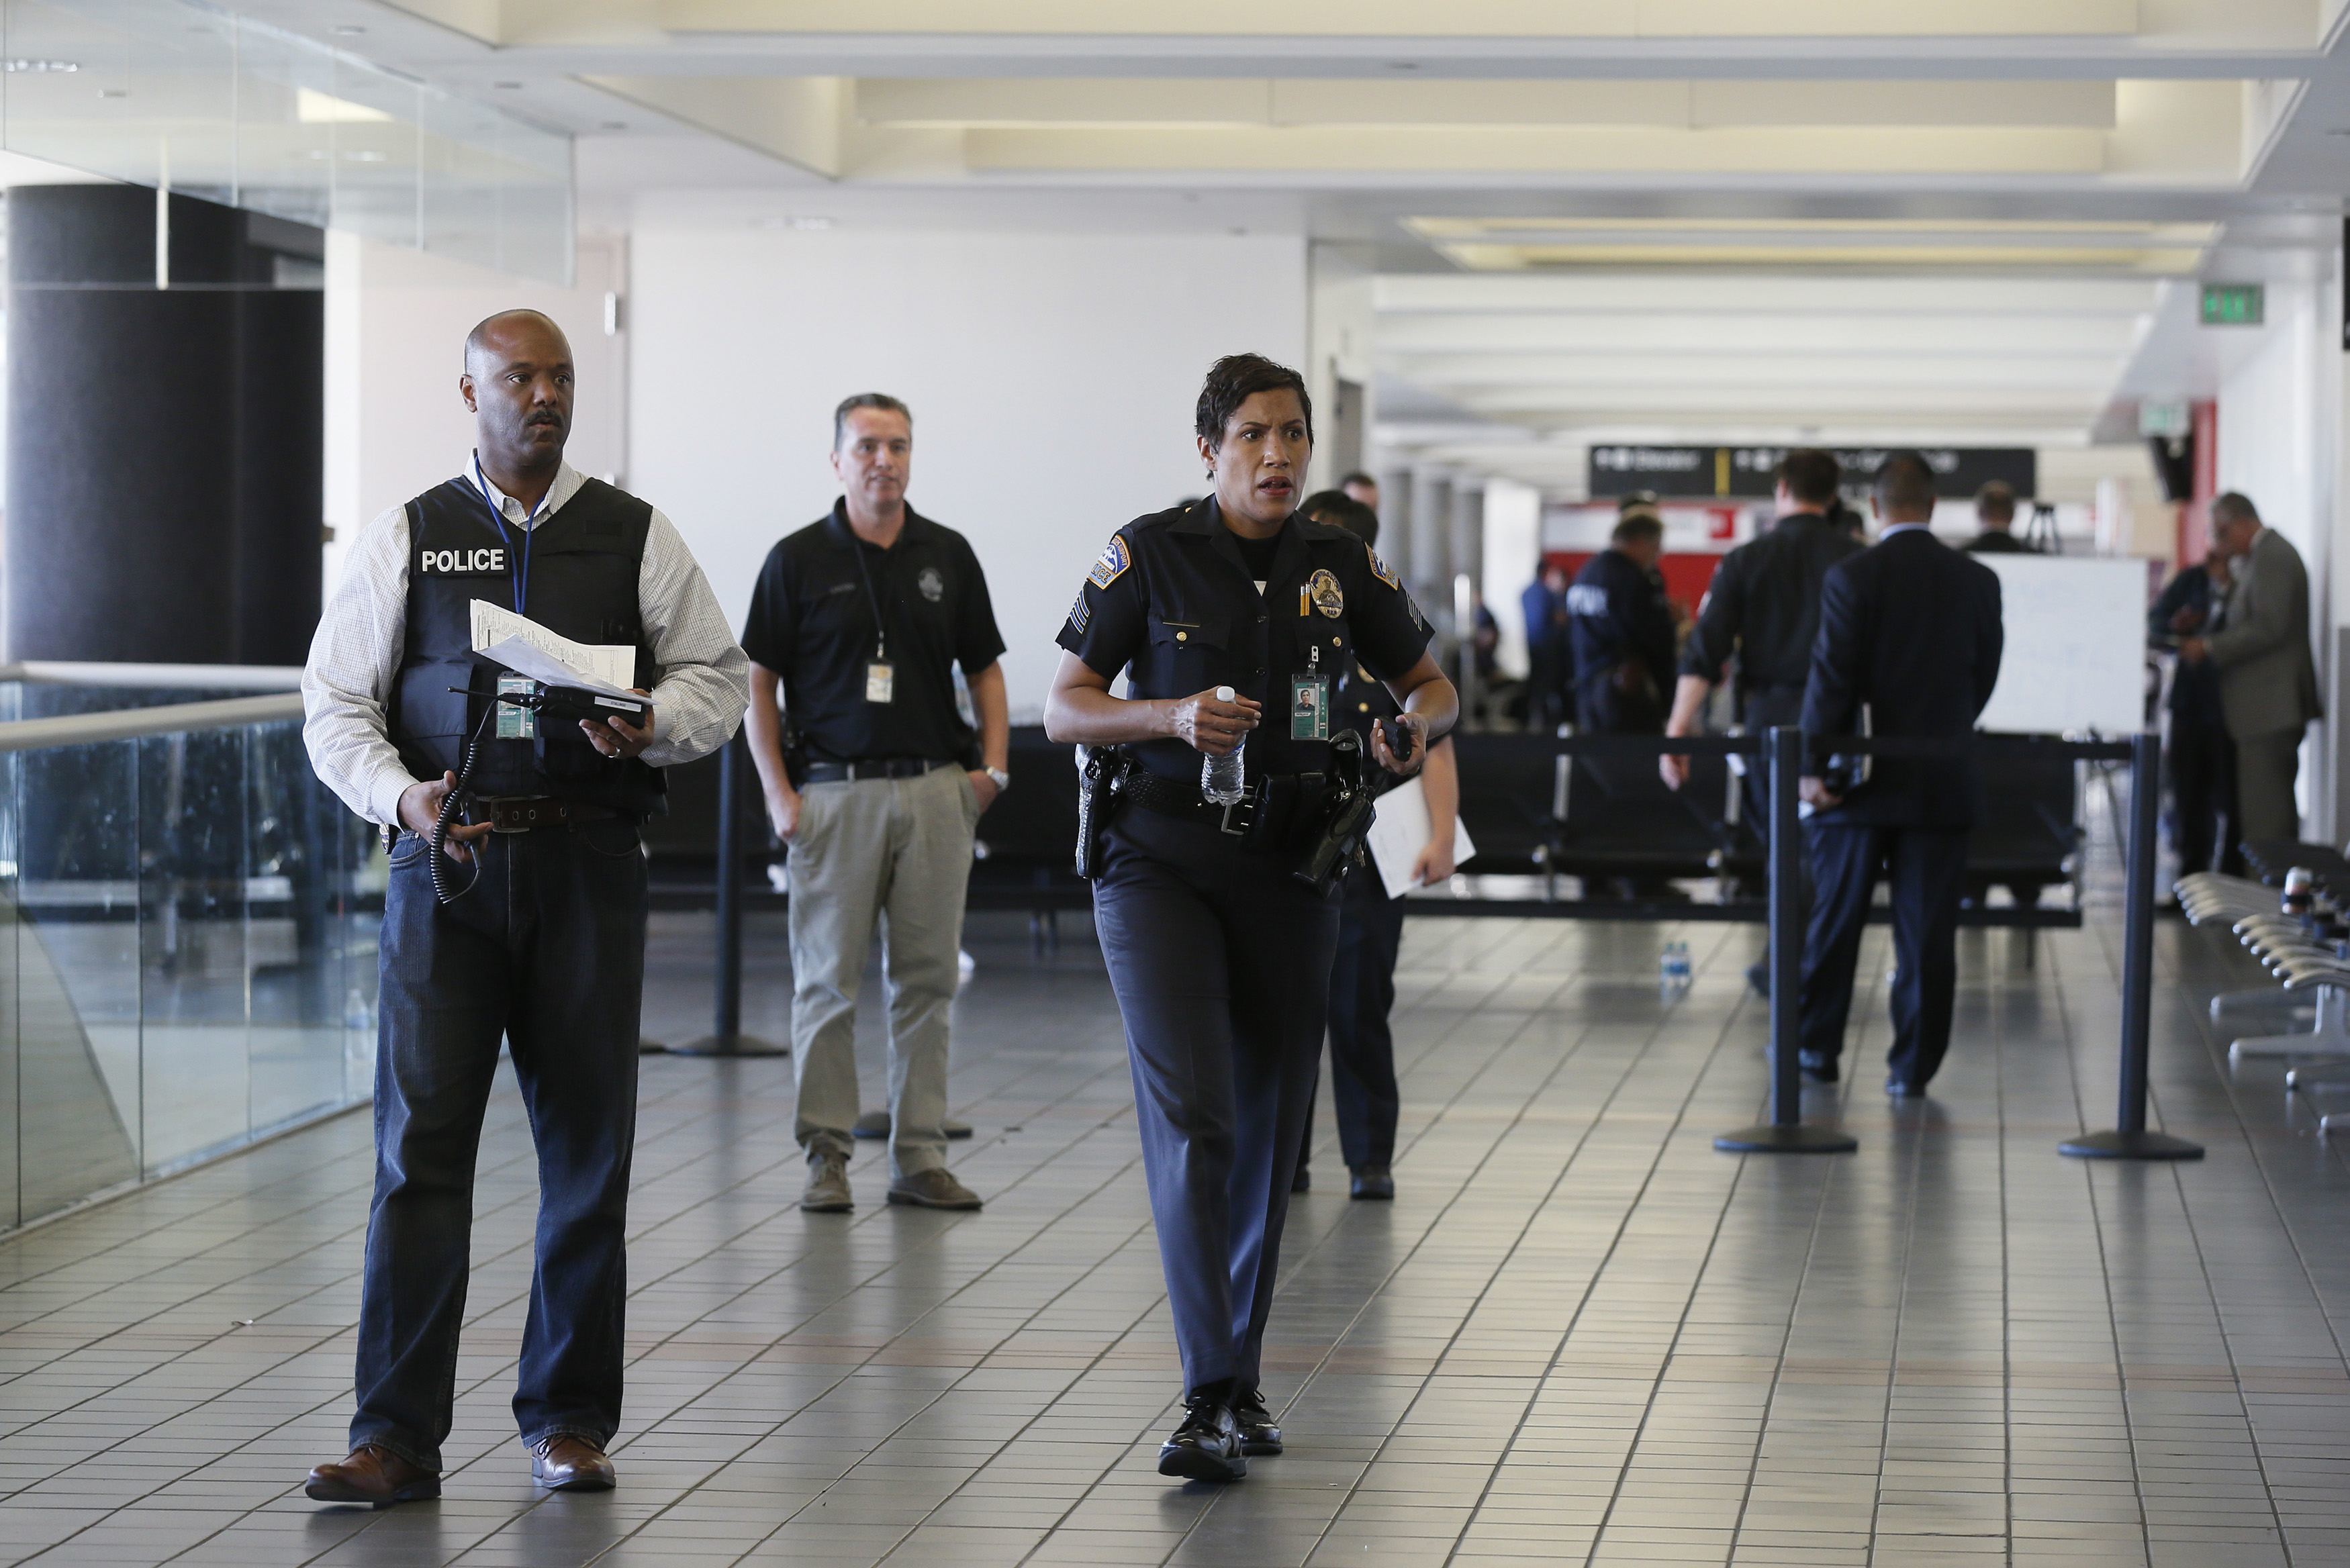 Βίντεο ντοκουμέντο από τη στιγμή των πυροβολισμών στο αεροδρόμιο του Λος Άντζελες